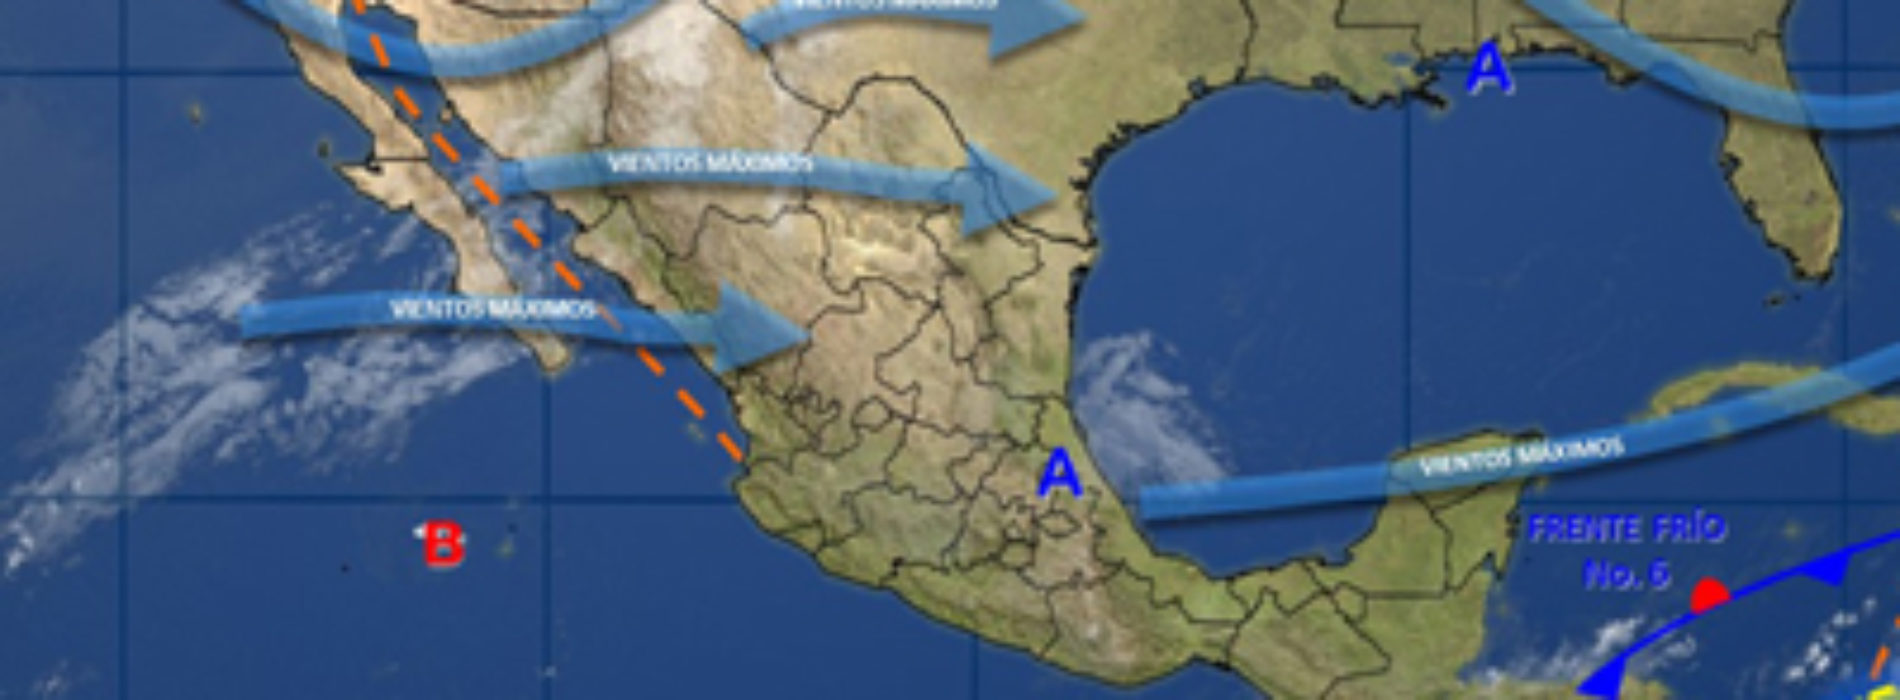 Se prevén lluvias fuertes en Oaxaca, así como vientos fuertes en el Istmo de Tehuantepec